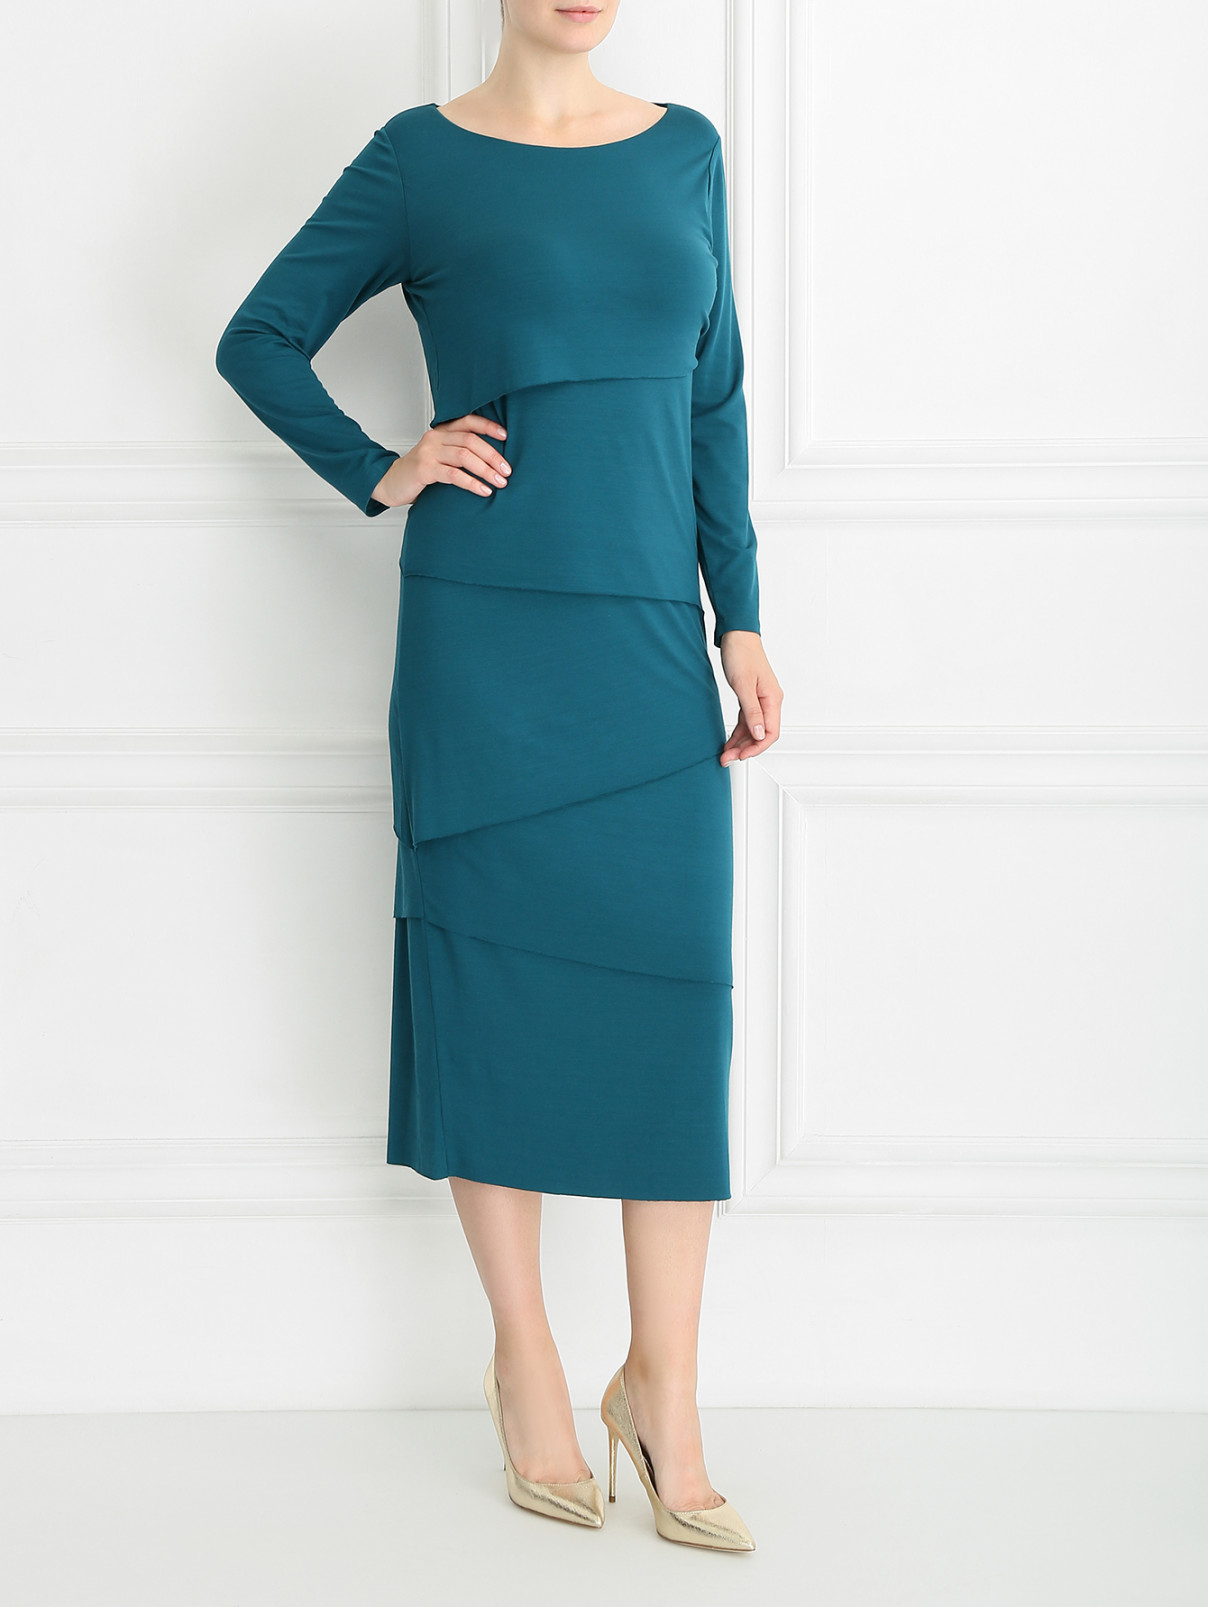 Платье трикотажное с декоративными элементами Marina Rinaldi  –  Модель Общий вид  – Цвет:  Зеленый